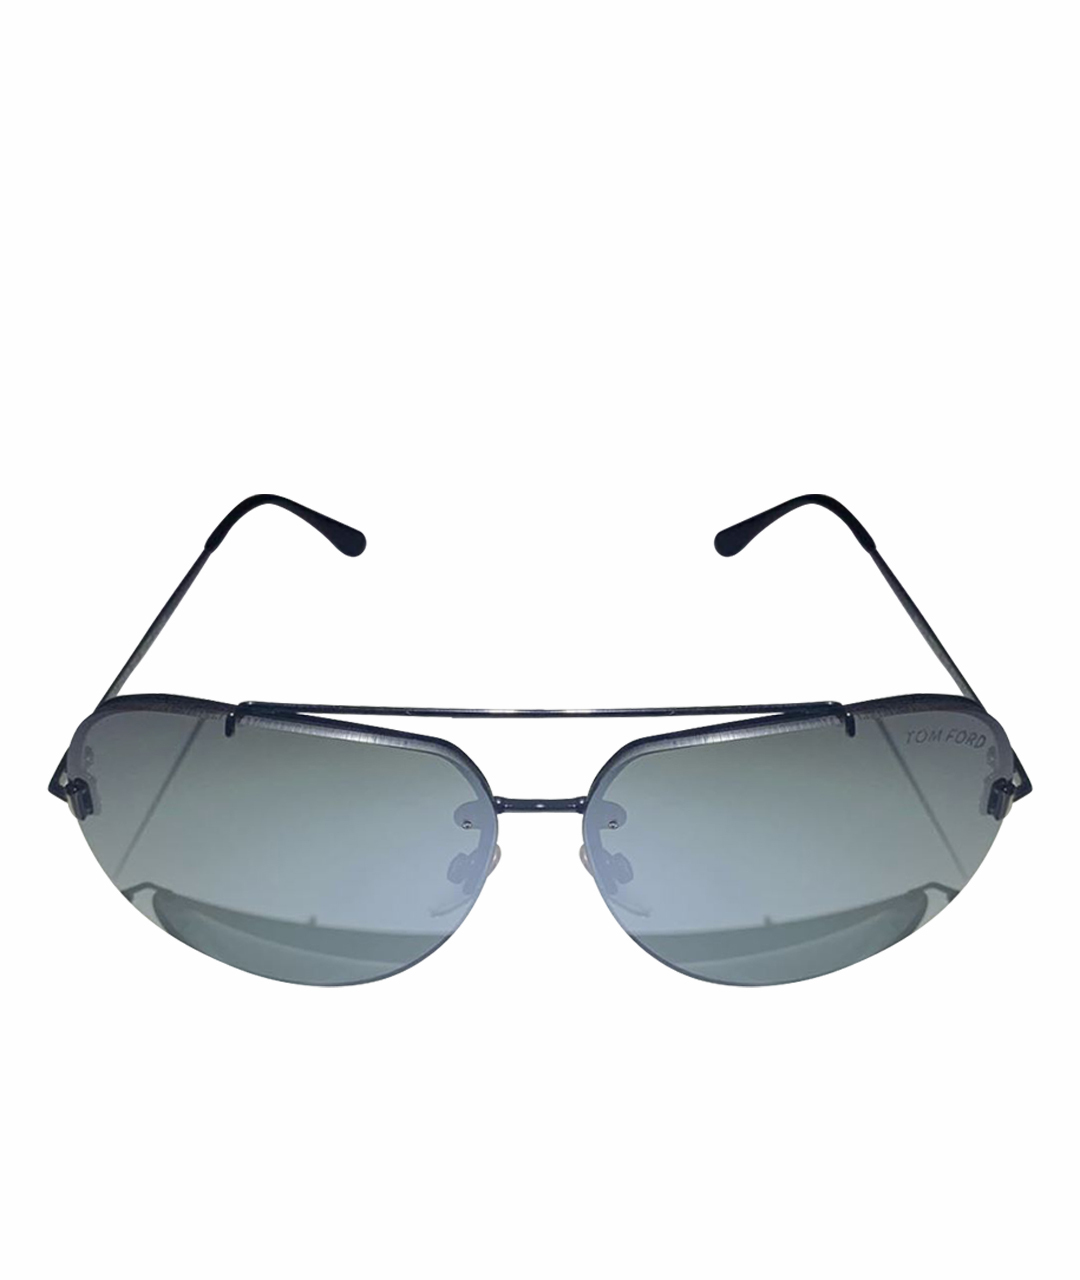 TOM FORD Антрацитовые металлические солнцезащитные очки, фото 1